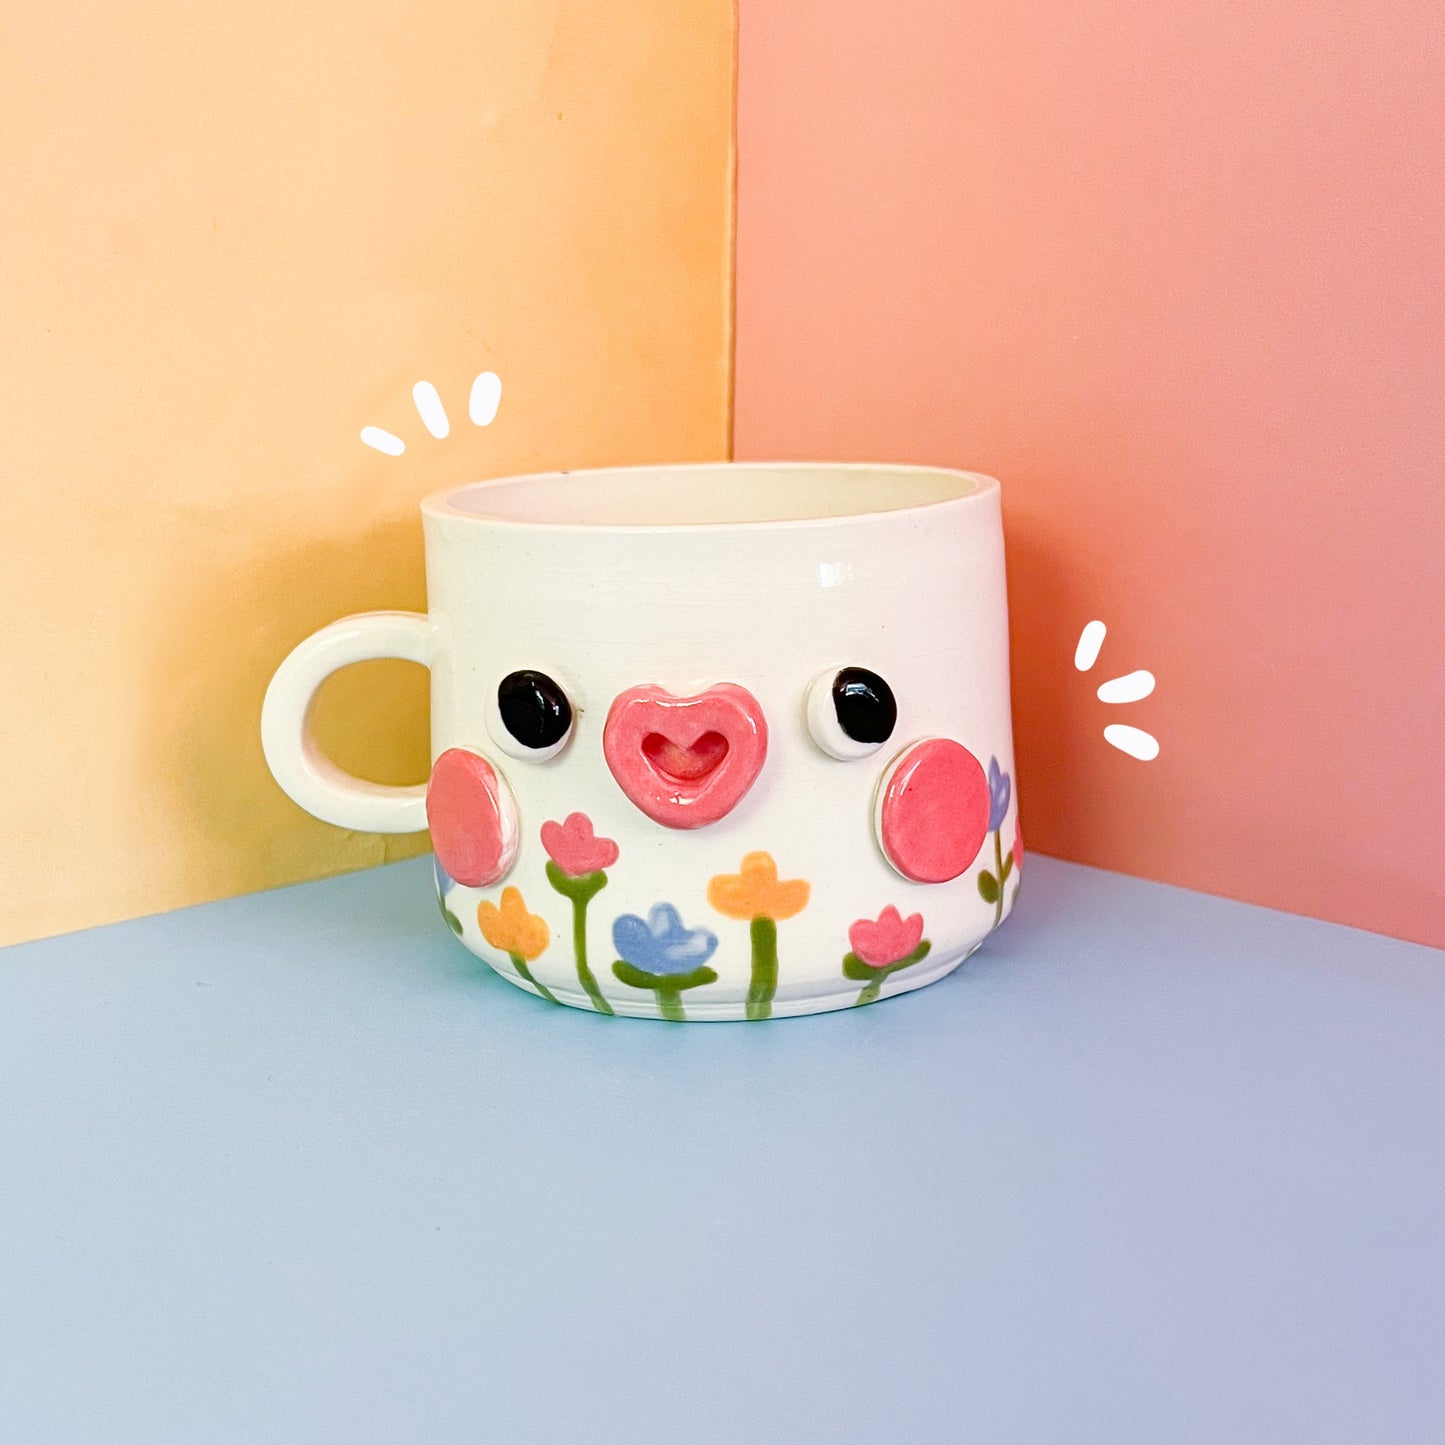 Flower mug